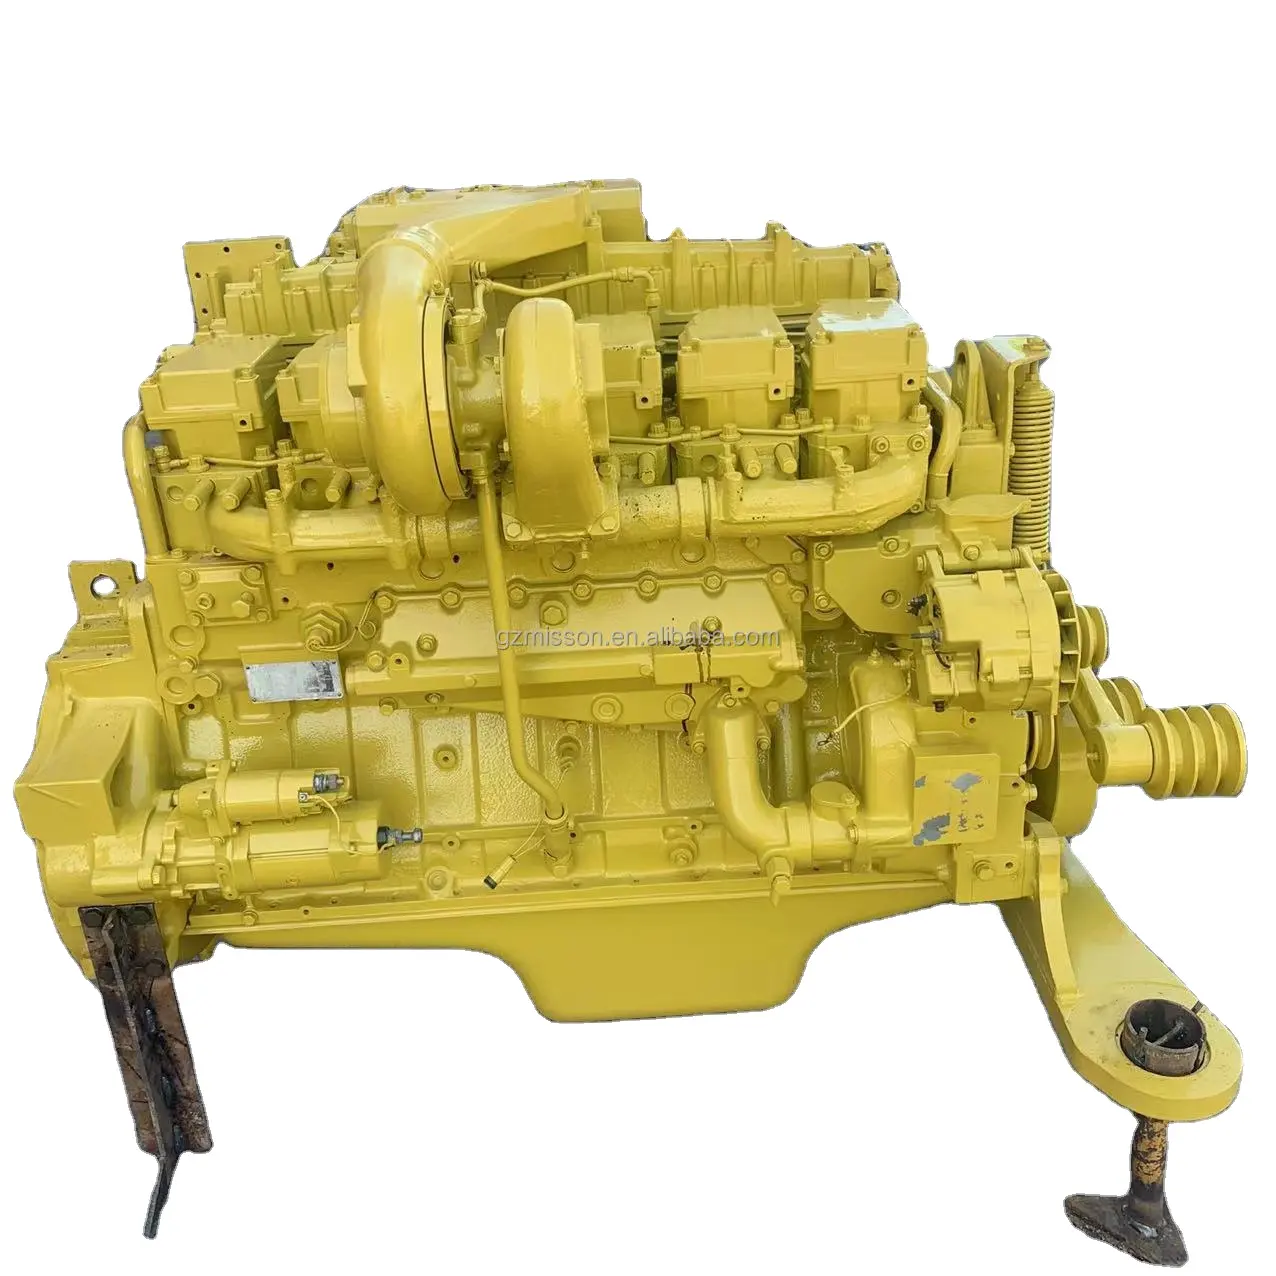 مجموعة محرك ديزل مخصصة ، 6D140 6D125 6D170 محرك ديزل لقطع غيار حفارة كوماتسو